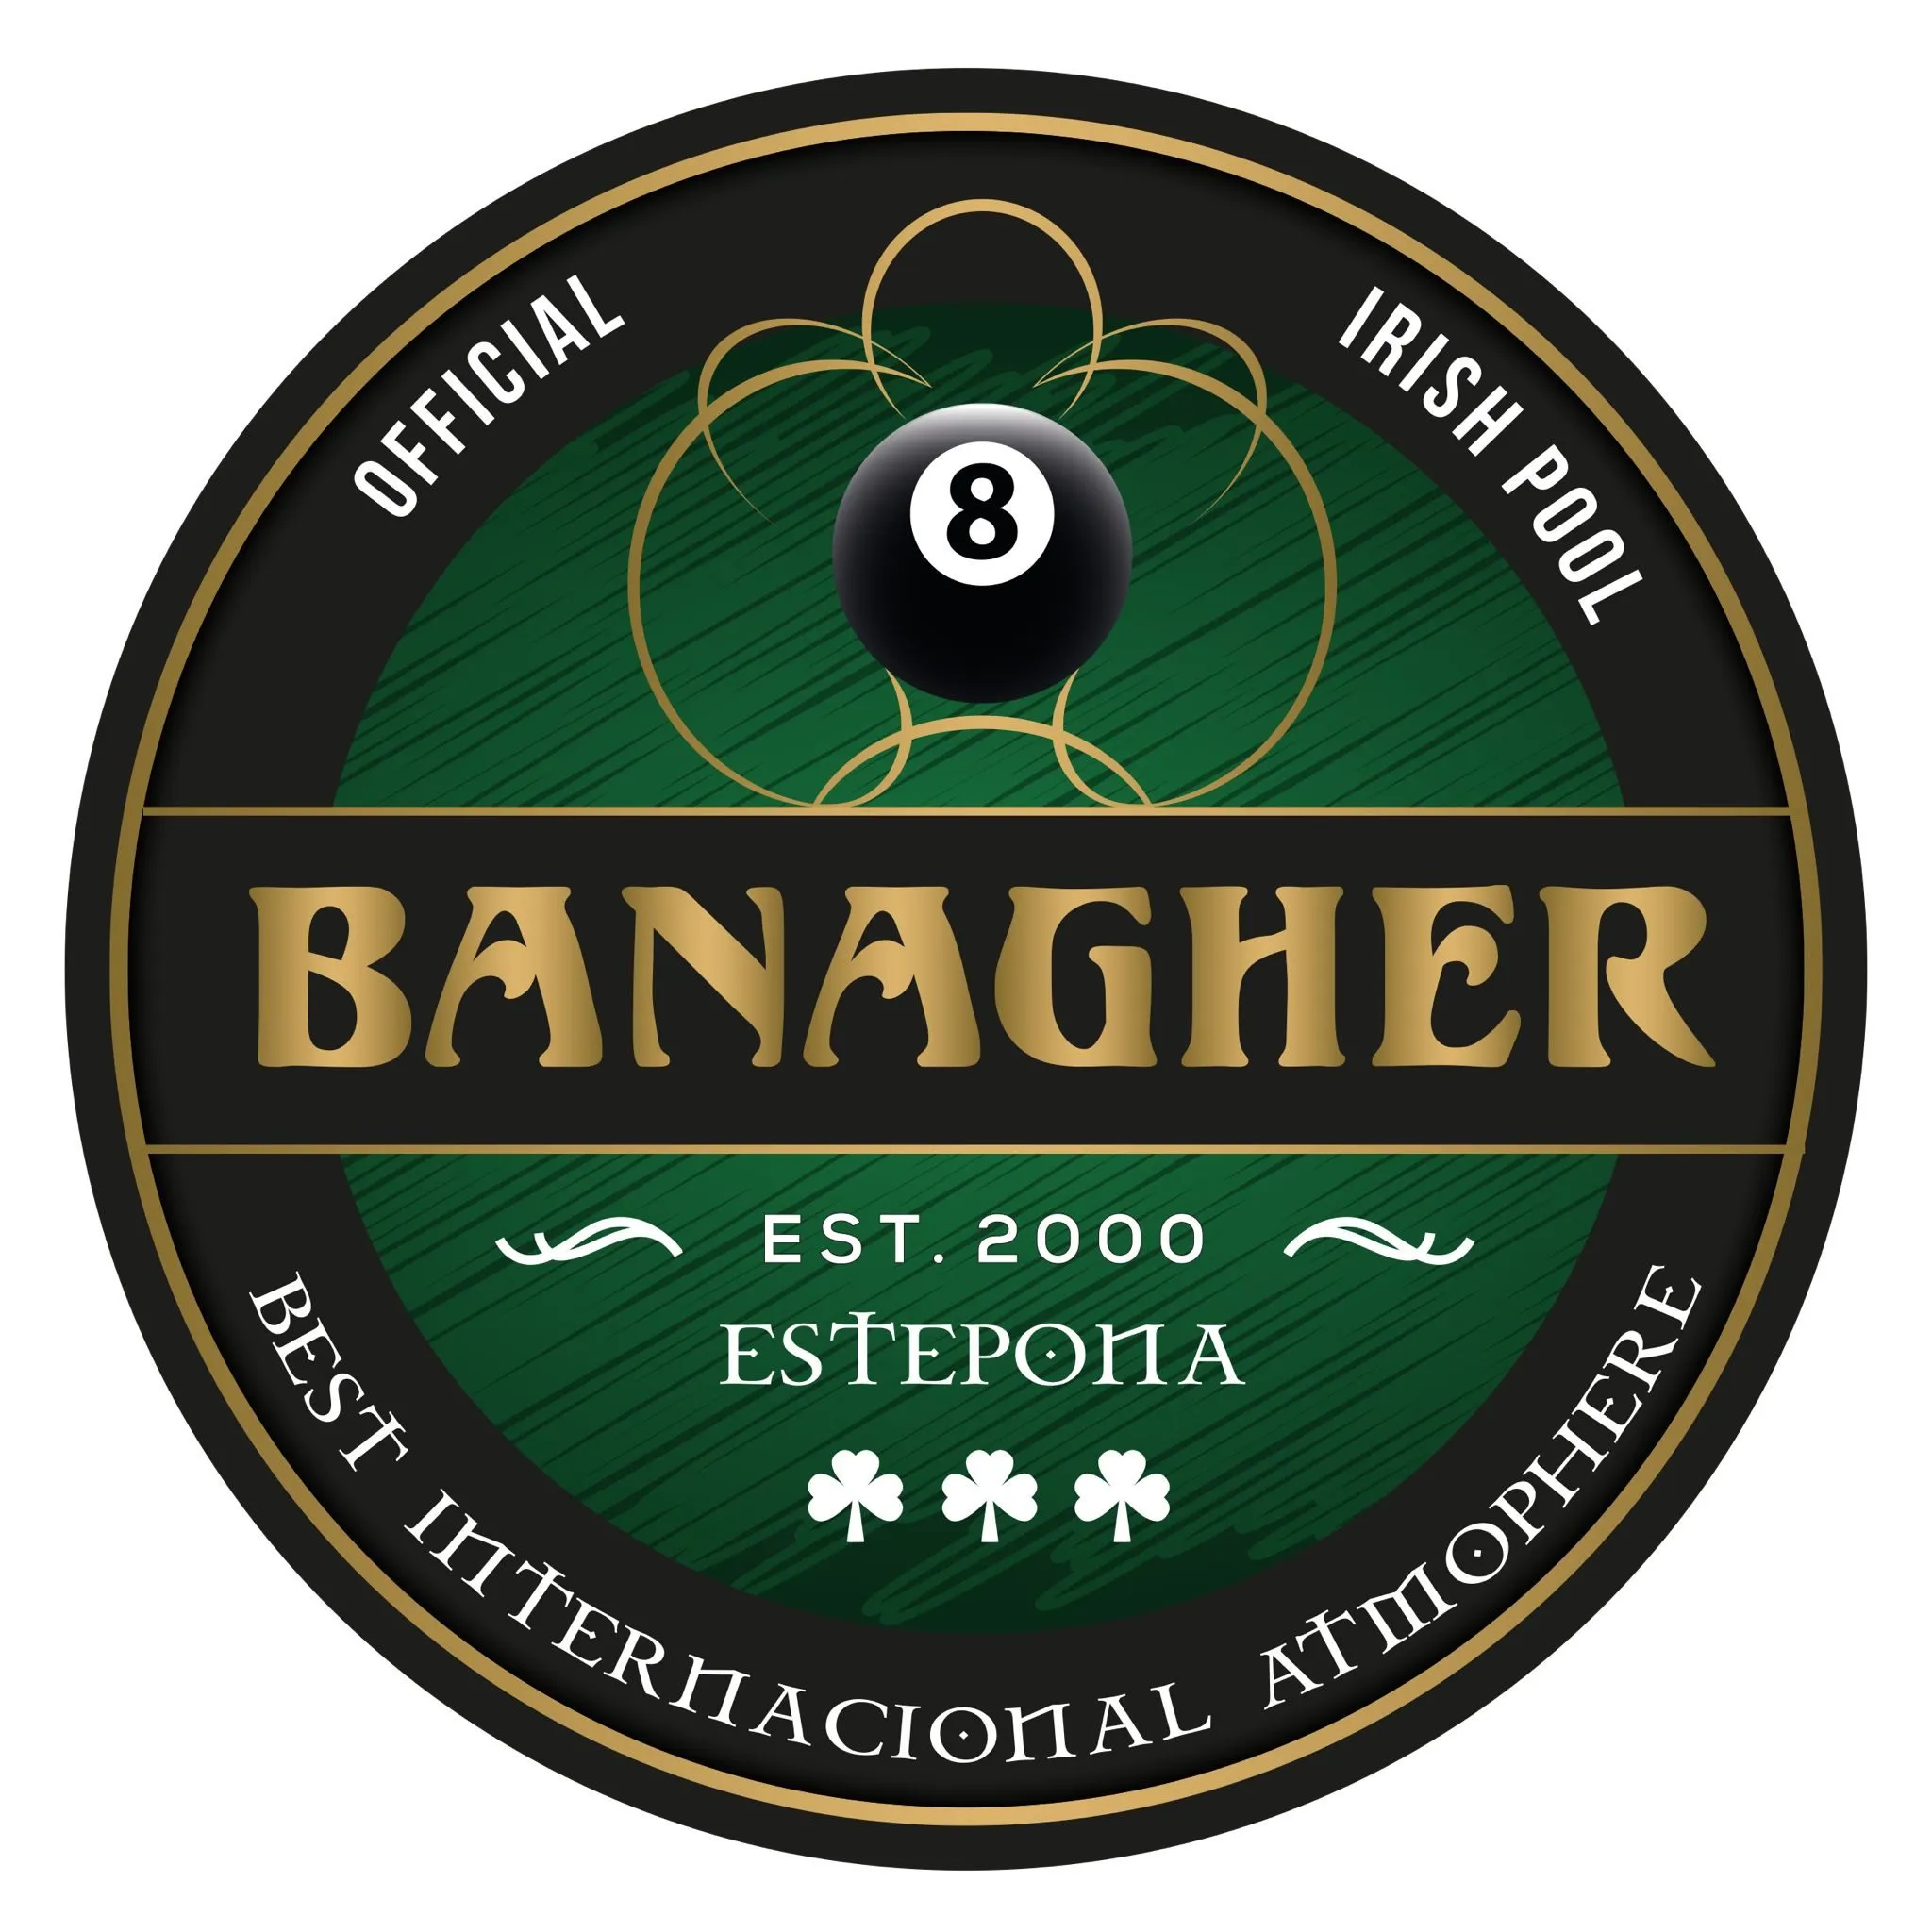 Banagher Estepona irish pub